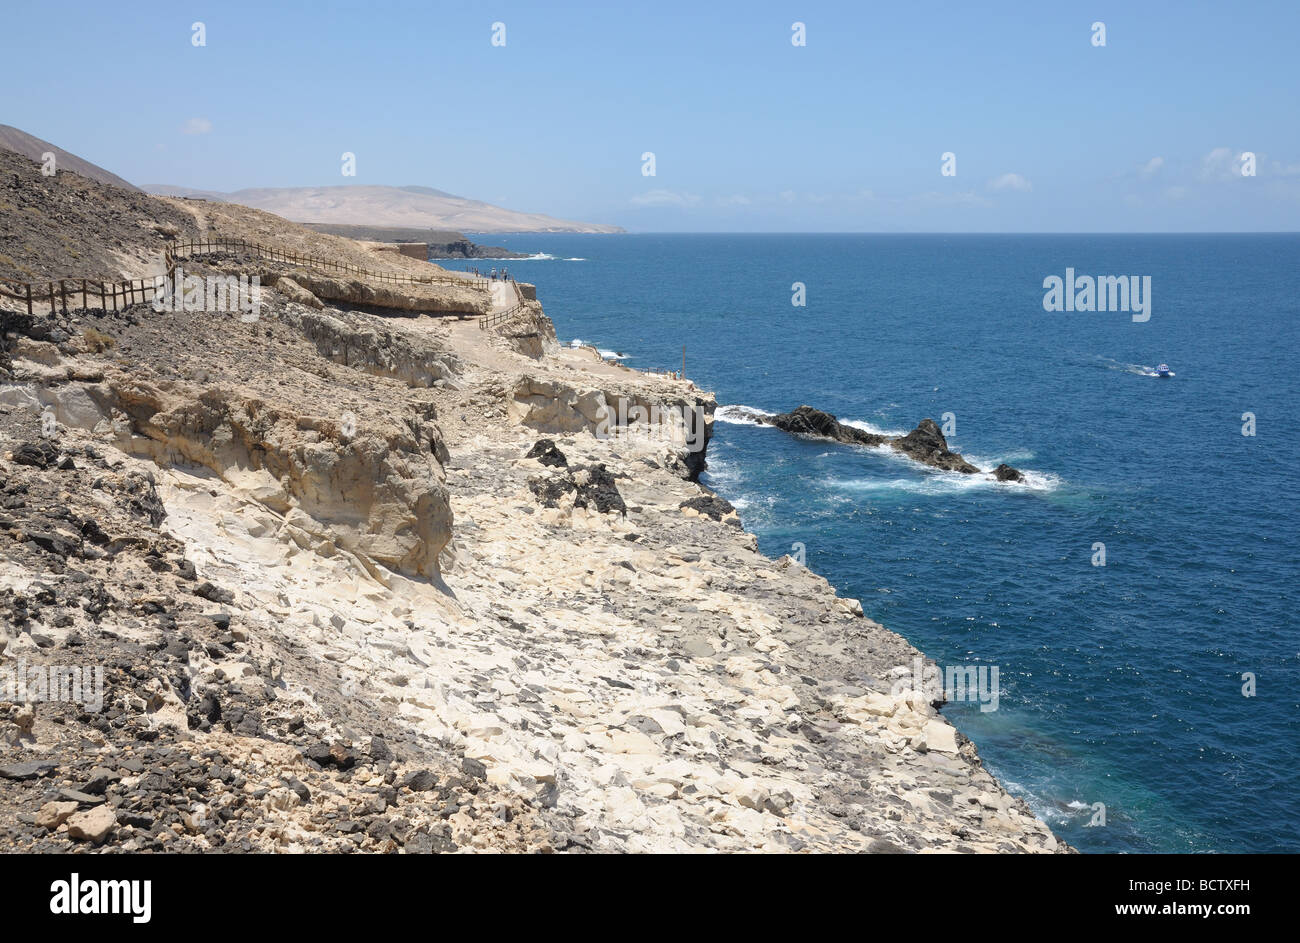 Village de pêcheurs de la côte près de Ajuy, Fuerteventura, Espagne île des Canaries Banque D'Images